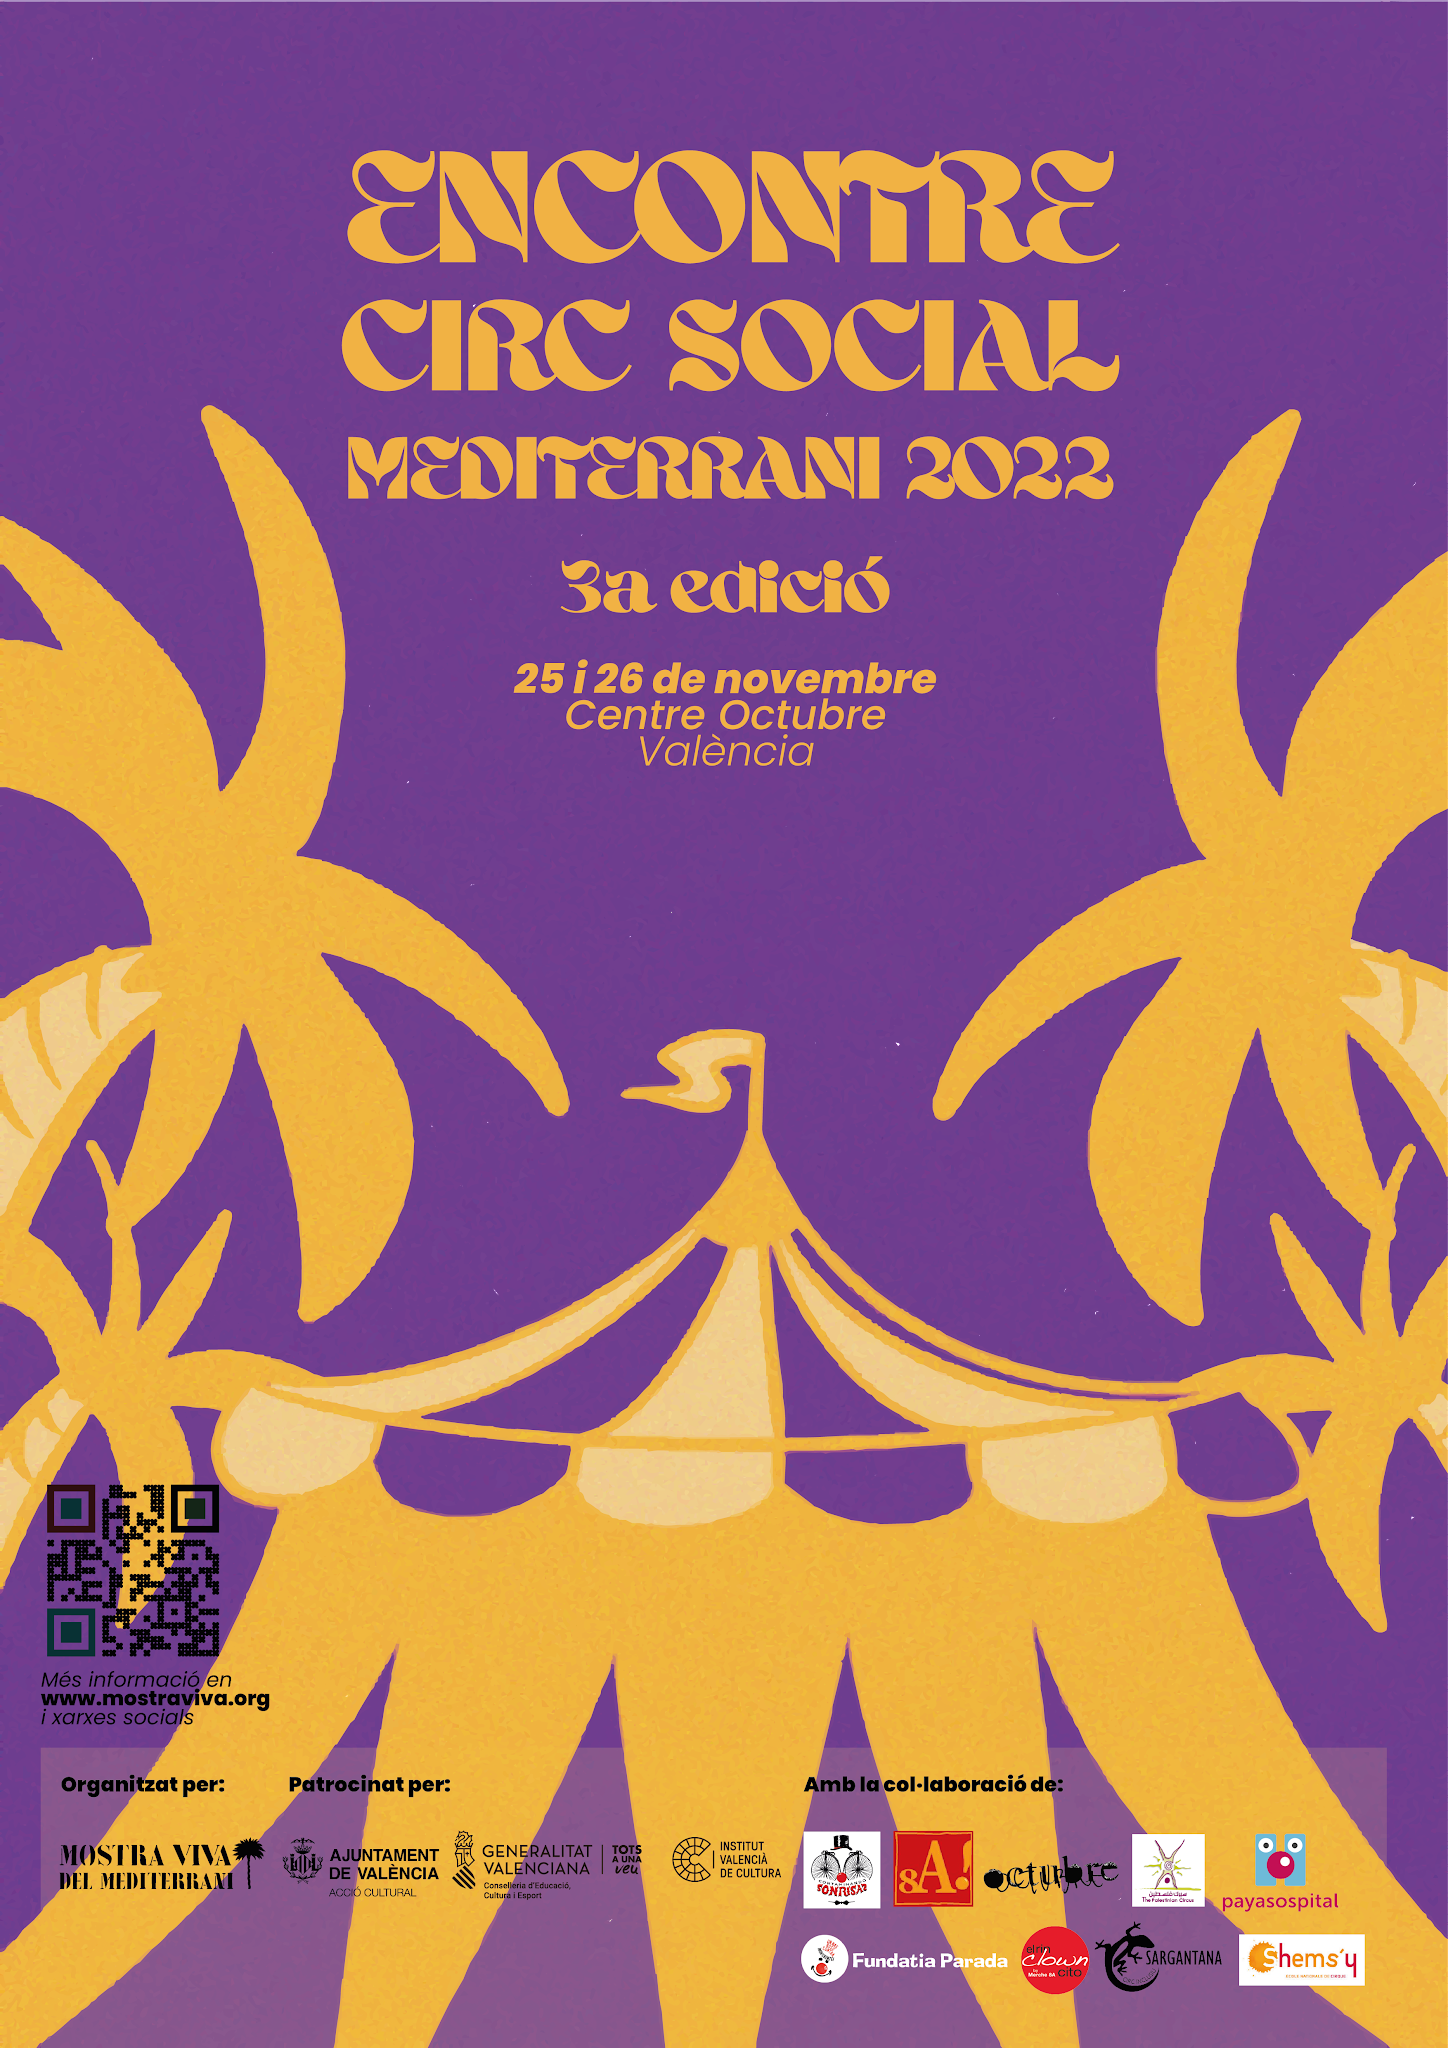 Mostra Viva del Mediterrani presenta el 3º Encoentre de Circ Social Mediterrani